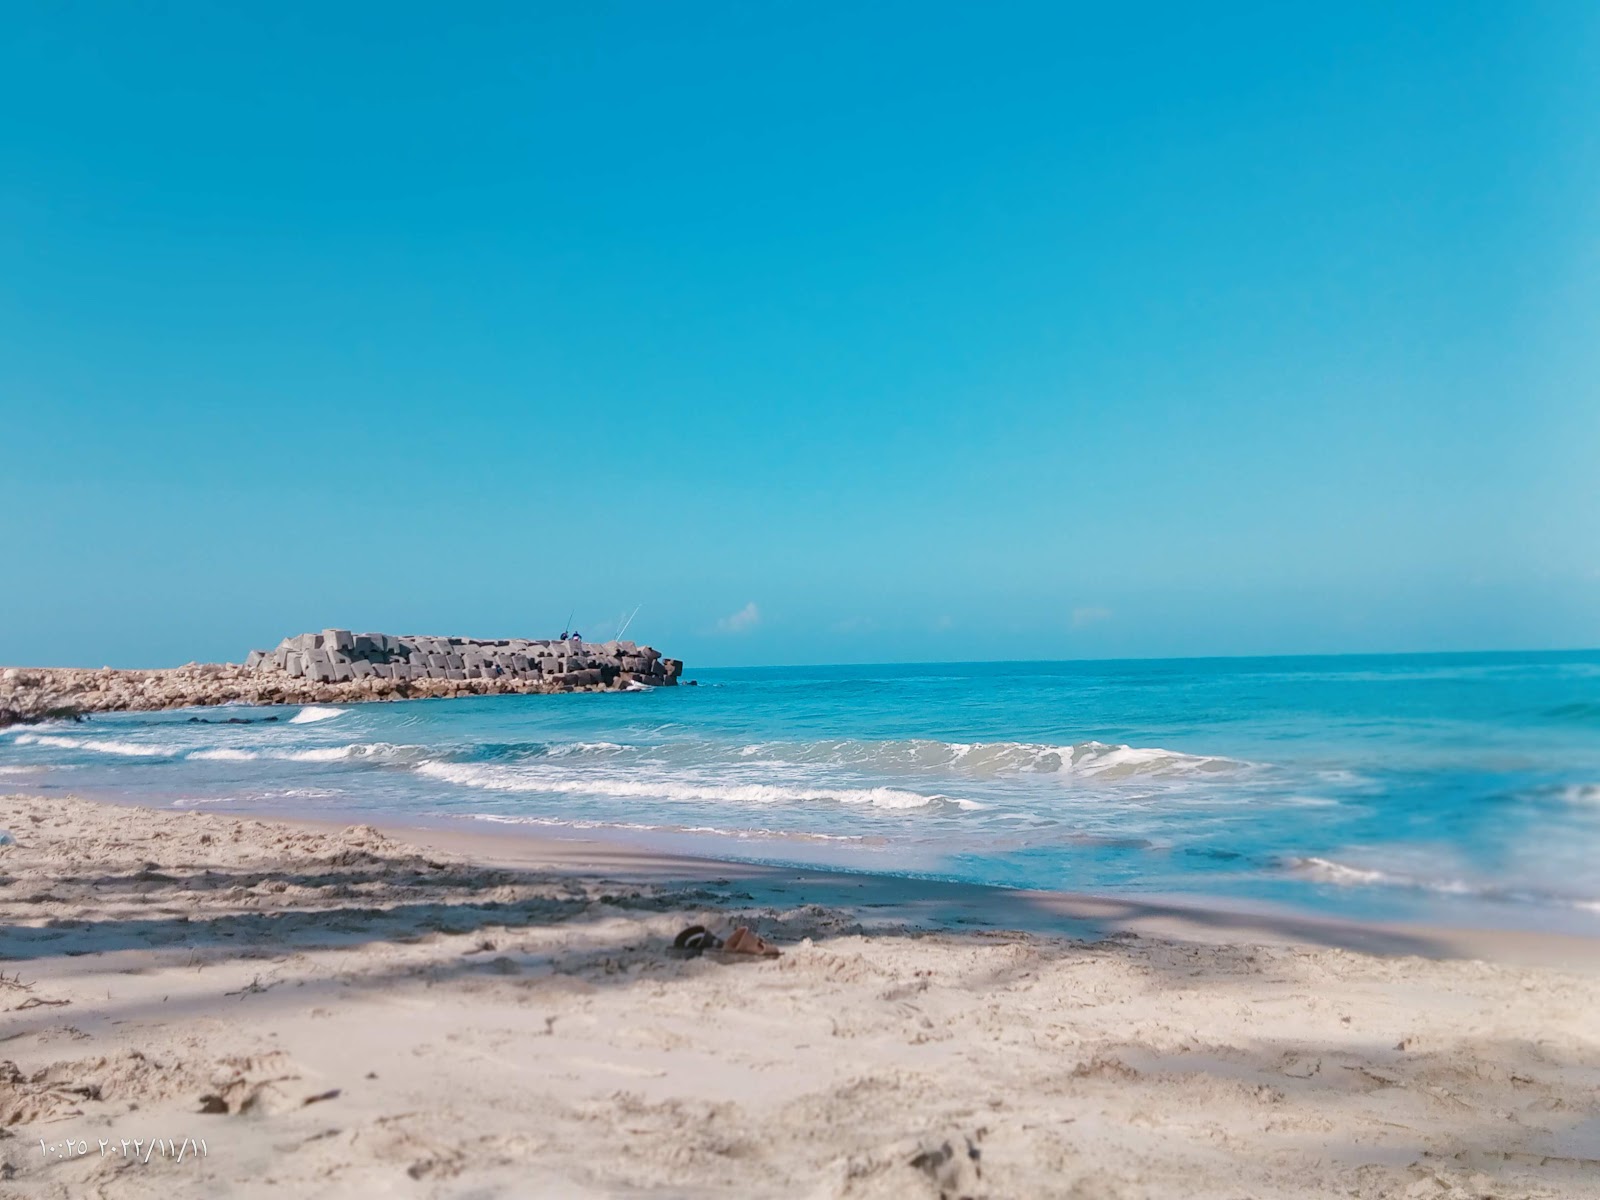 Fotografie cu Al-Arish Beach cu o suprafață de nisip strălucitor